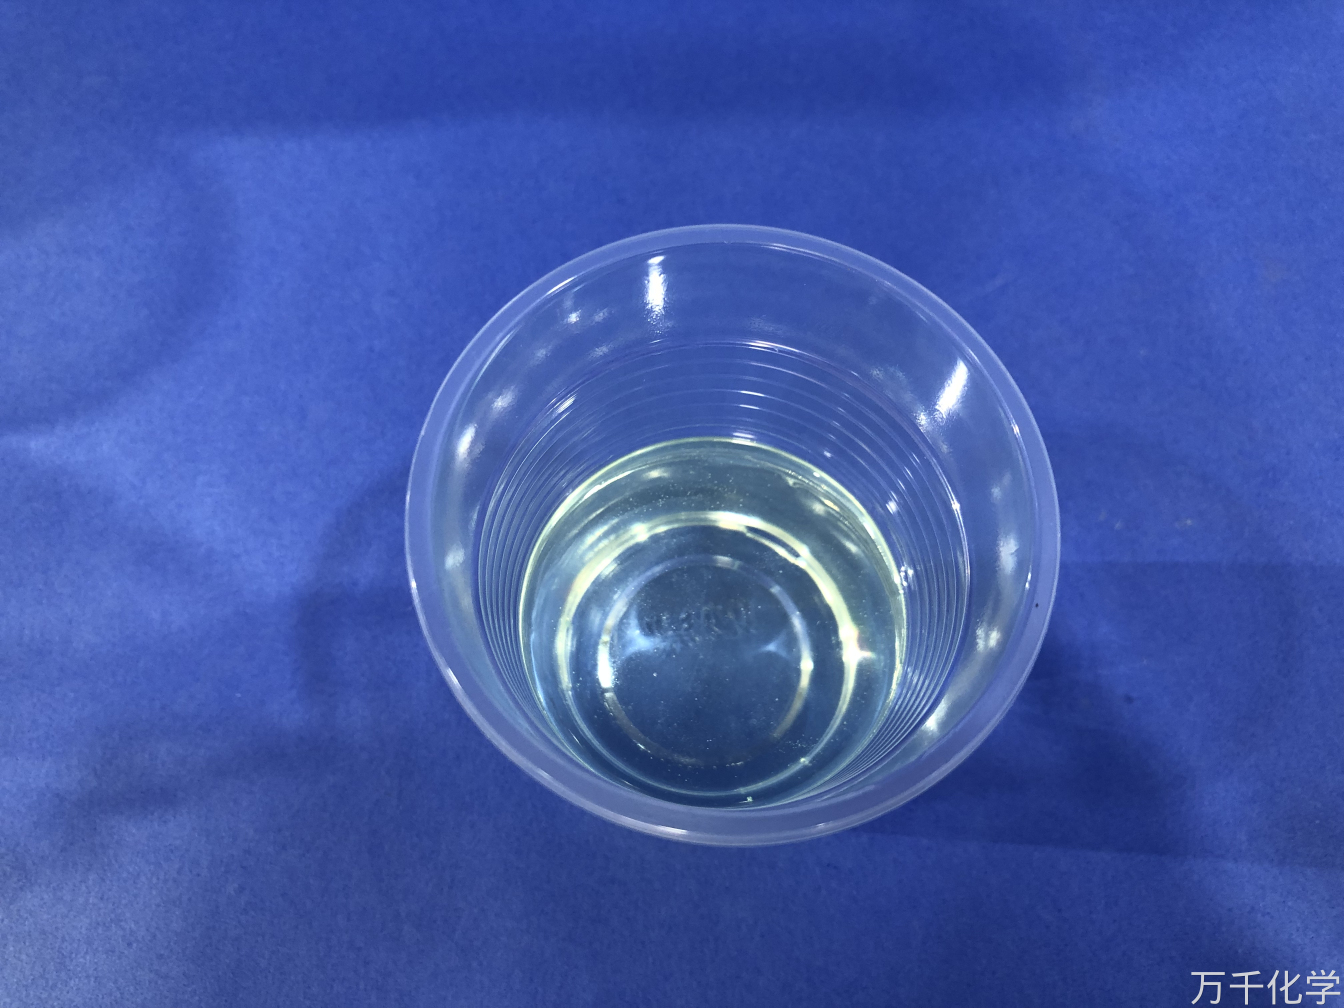 TM - 189 resina in poliestere insaturi resistenti all'acqua per prodotti con scafo in acciaio in vetro